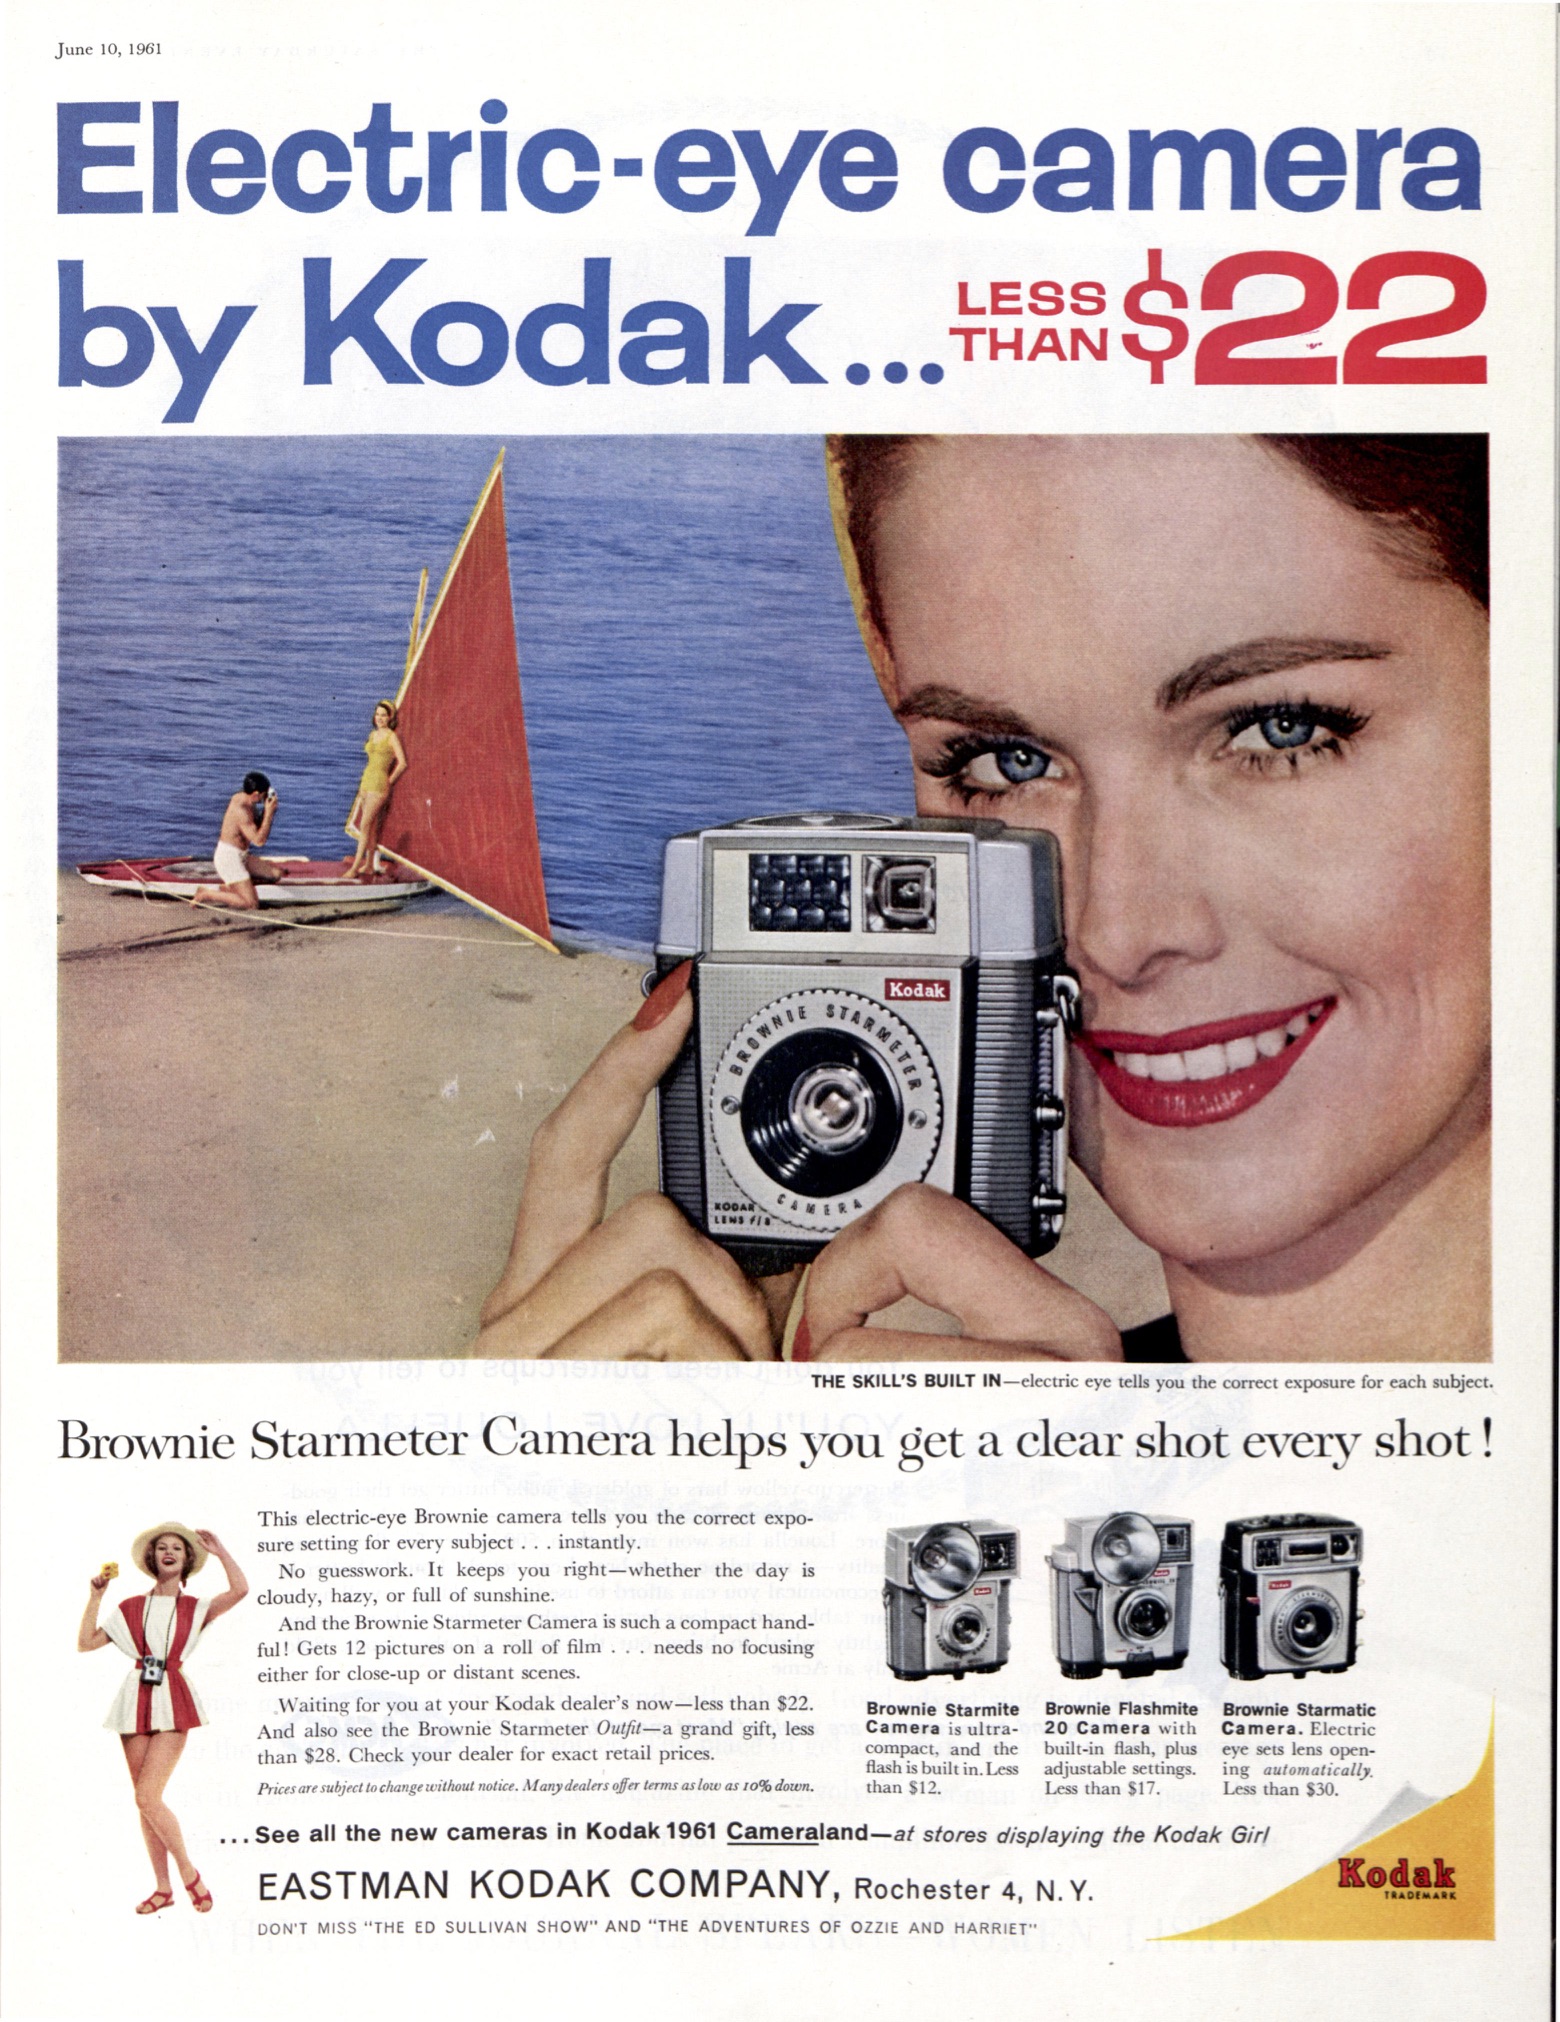 Vintage Advertising: Kodak Cameras from 1901-1965